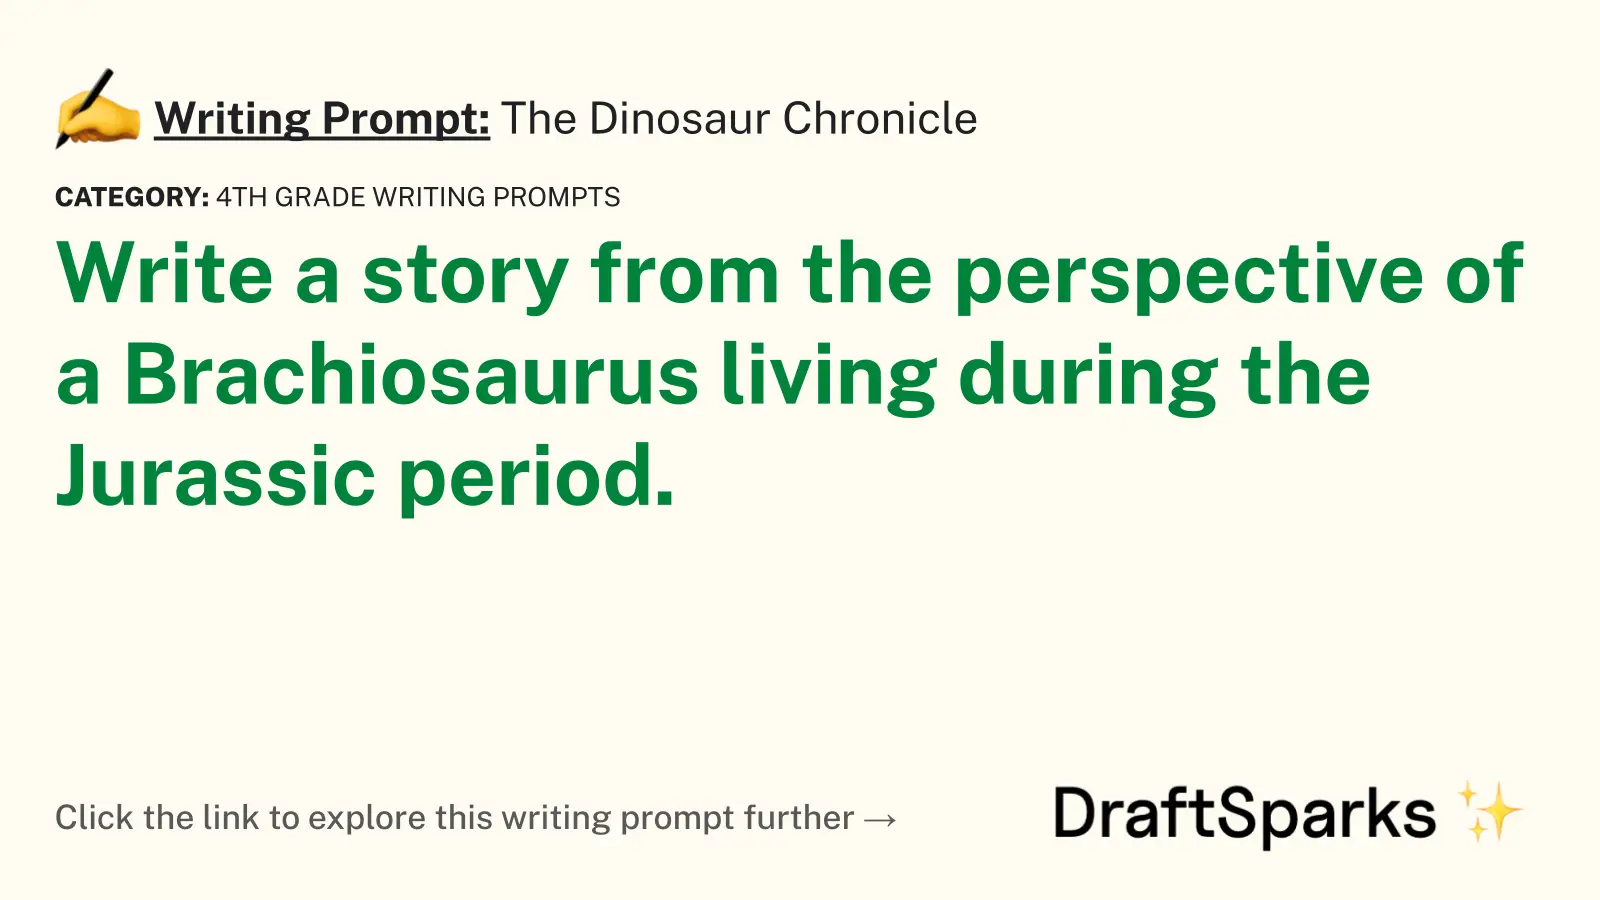 The Dinosaur Chronicle